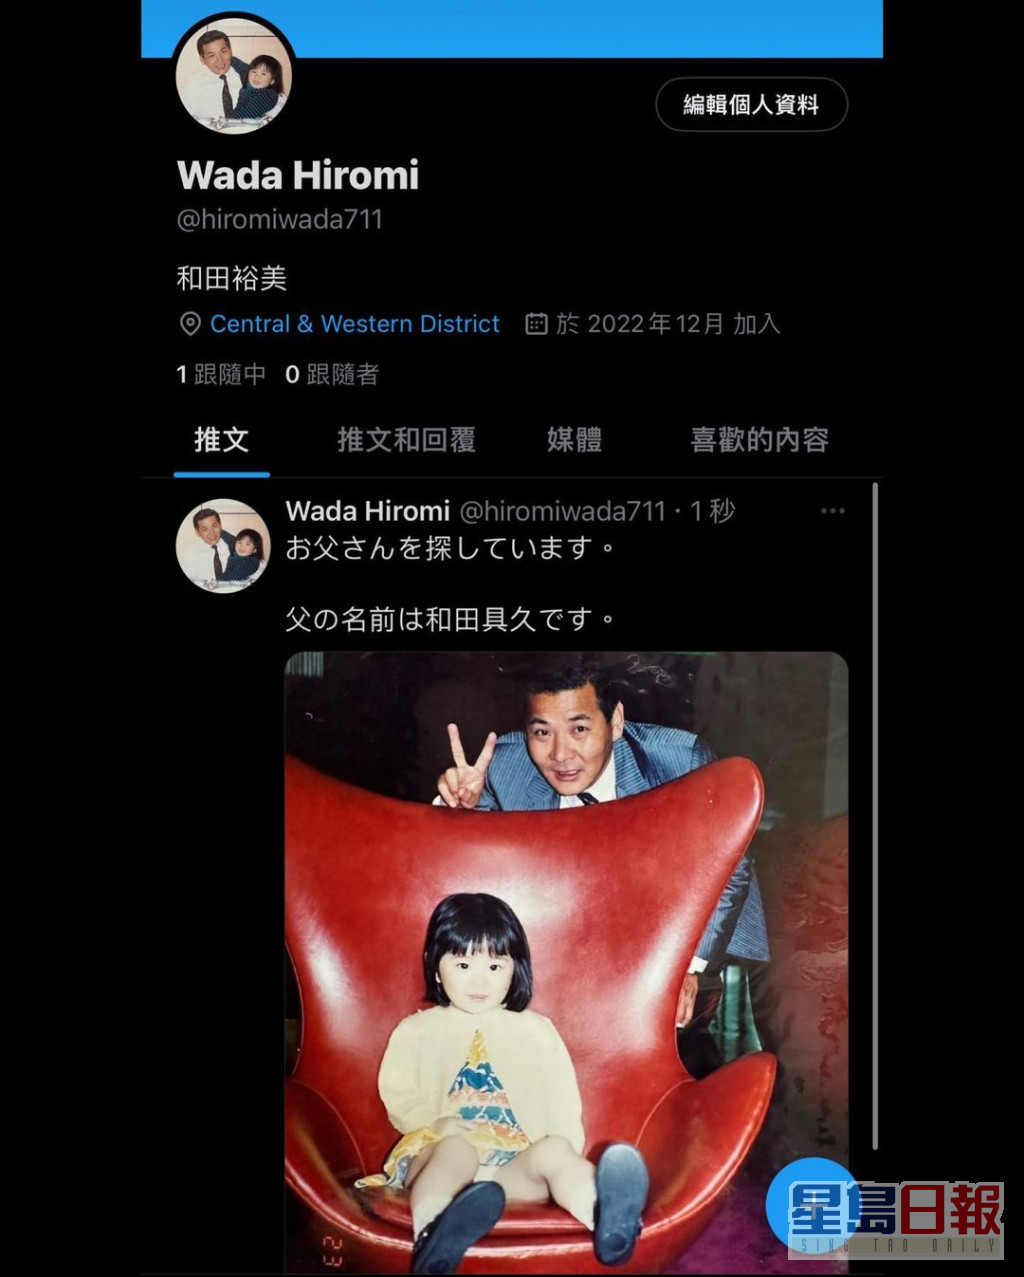 裕美立刻開twitter賬號聯絡，同時以日文貼出與父親的童年合照。